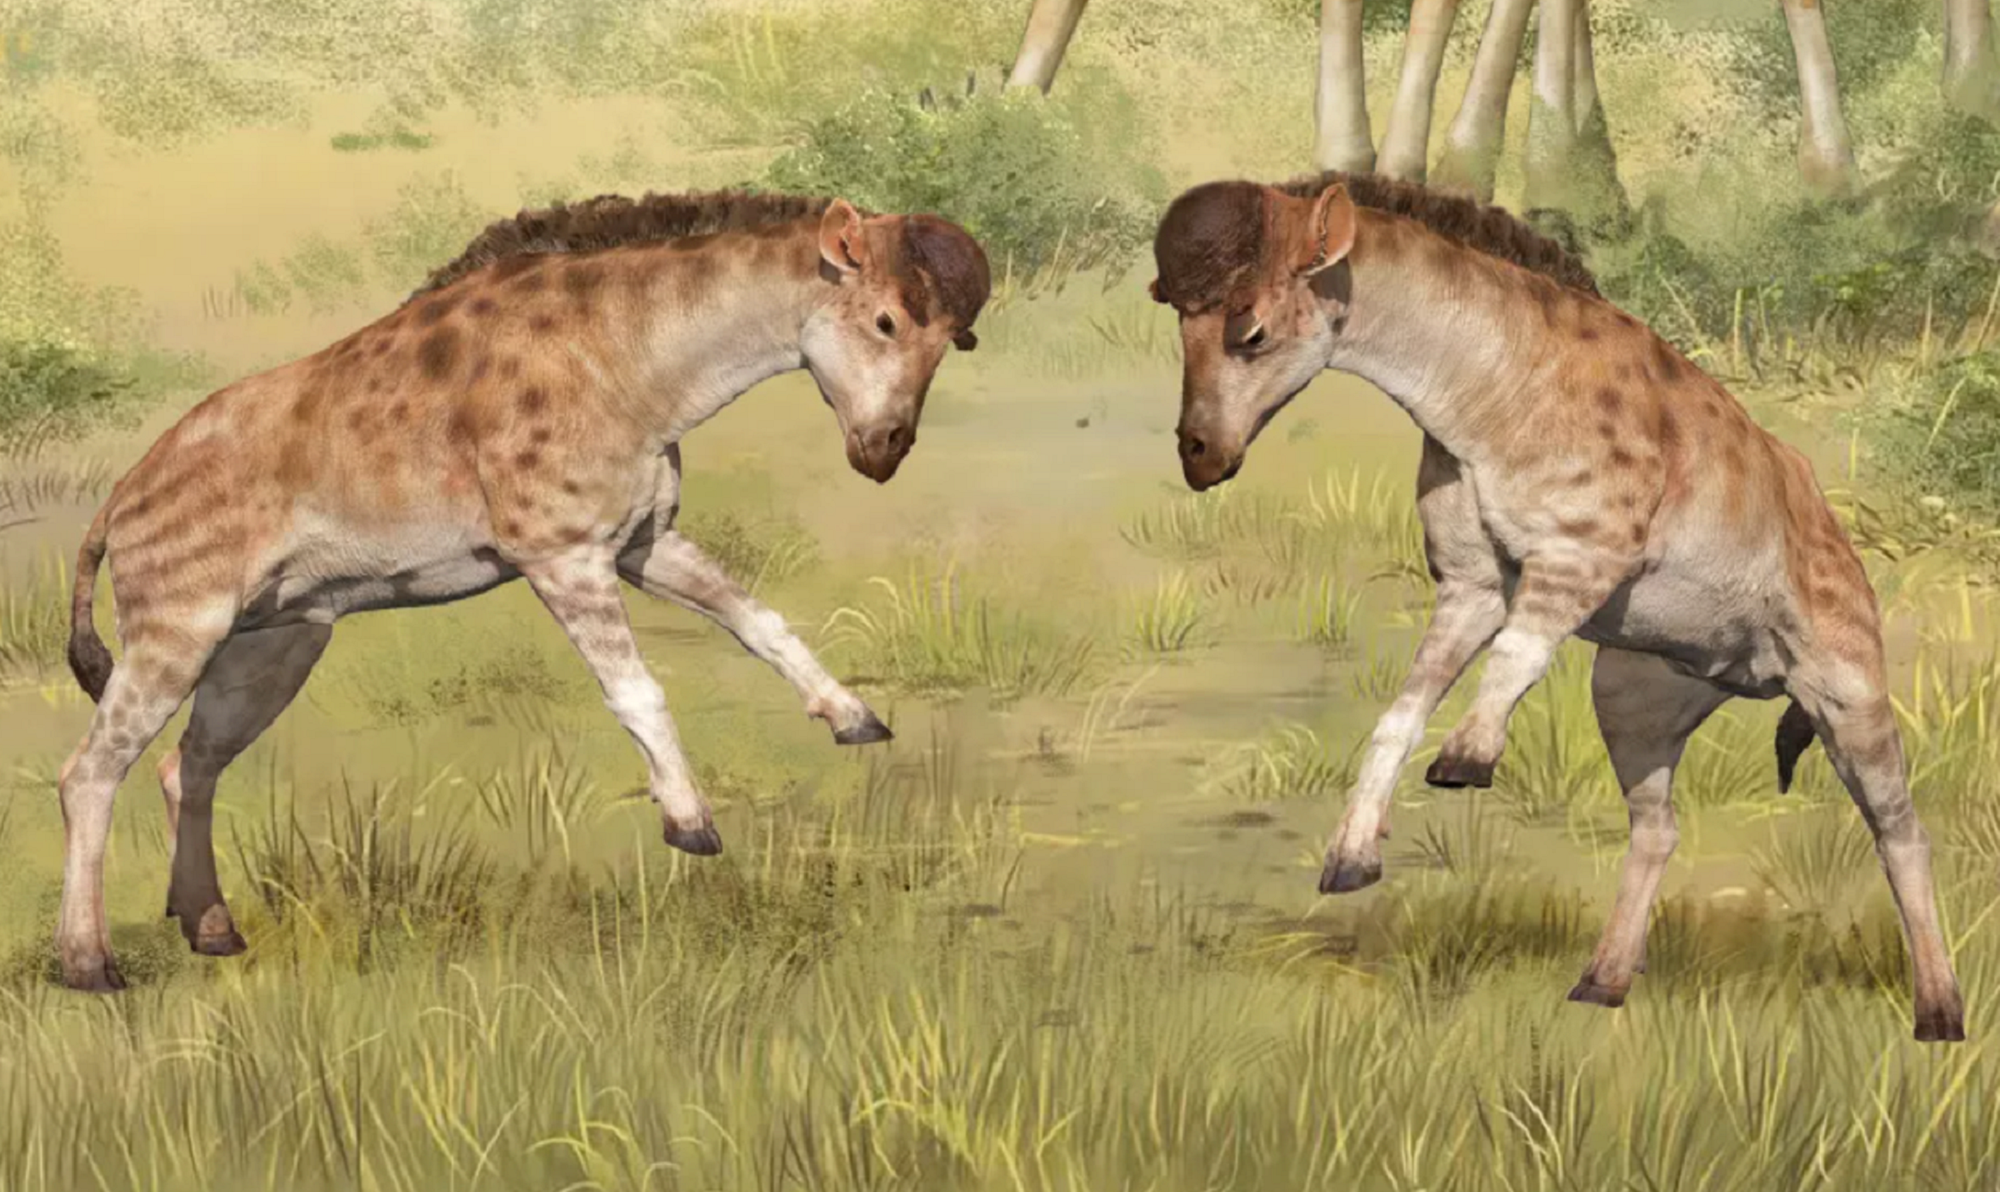 Fossils of a giraffe ancestor with short necks headbutting each other in a grassland in an artist